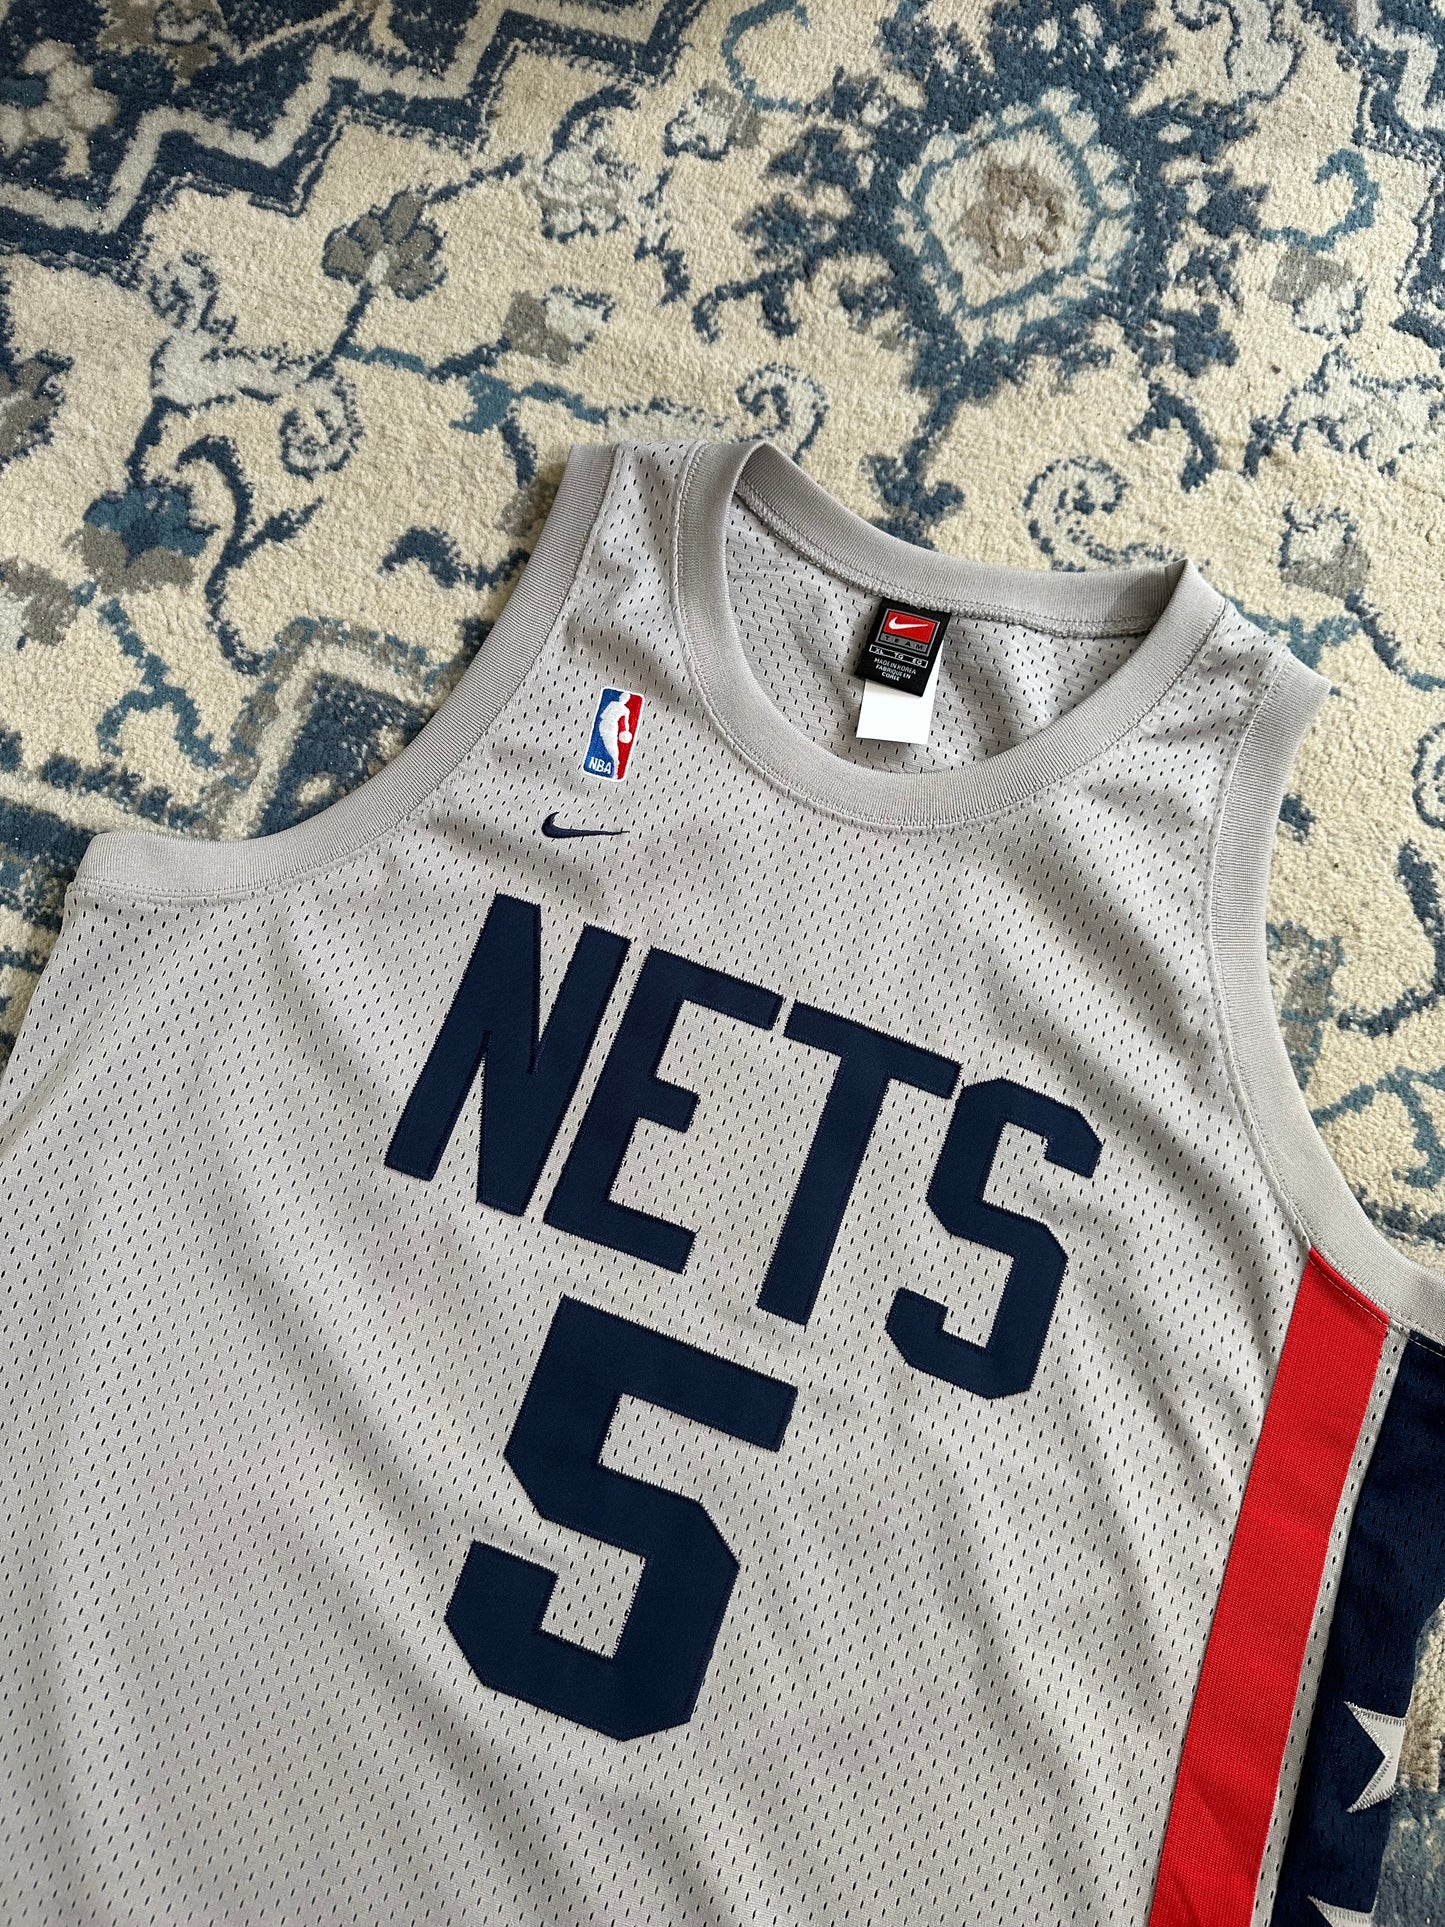 Nike Jason Kidd New Jersey Nets Jersey